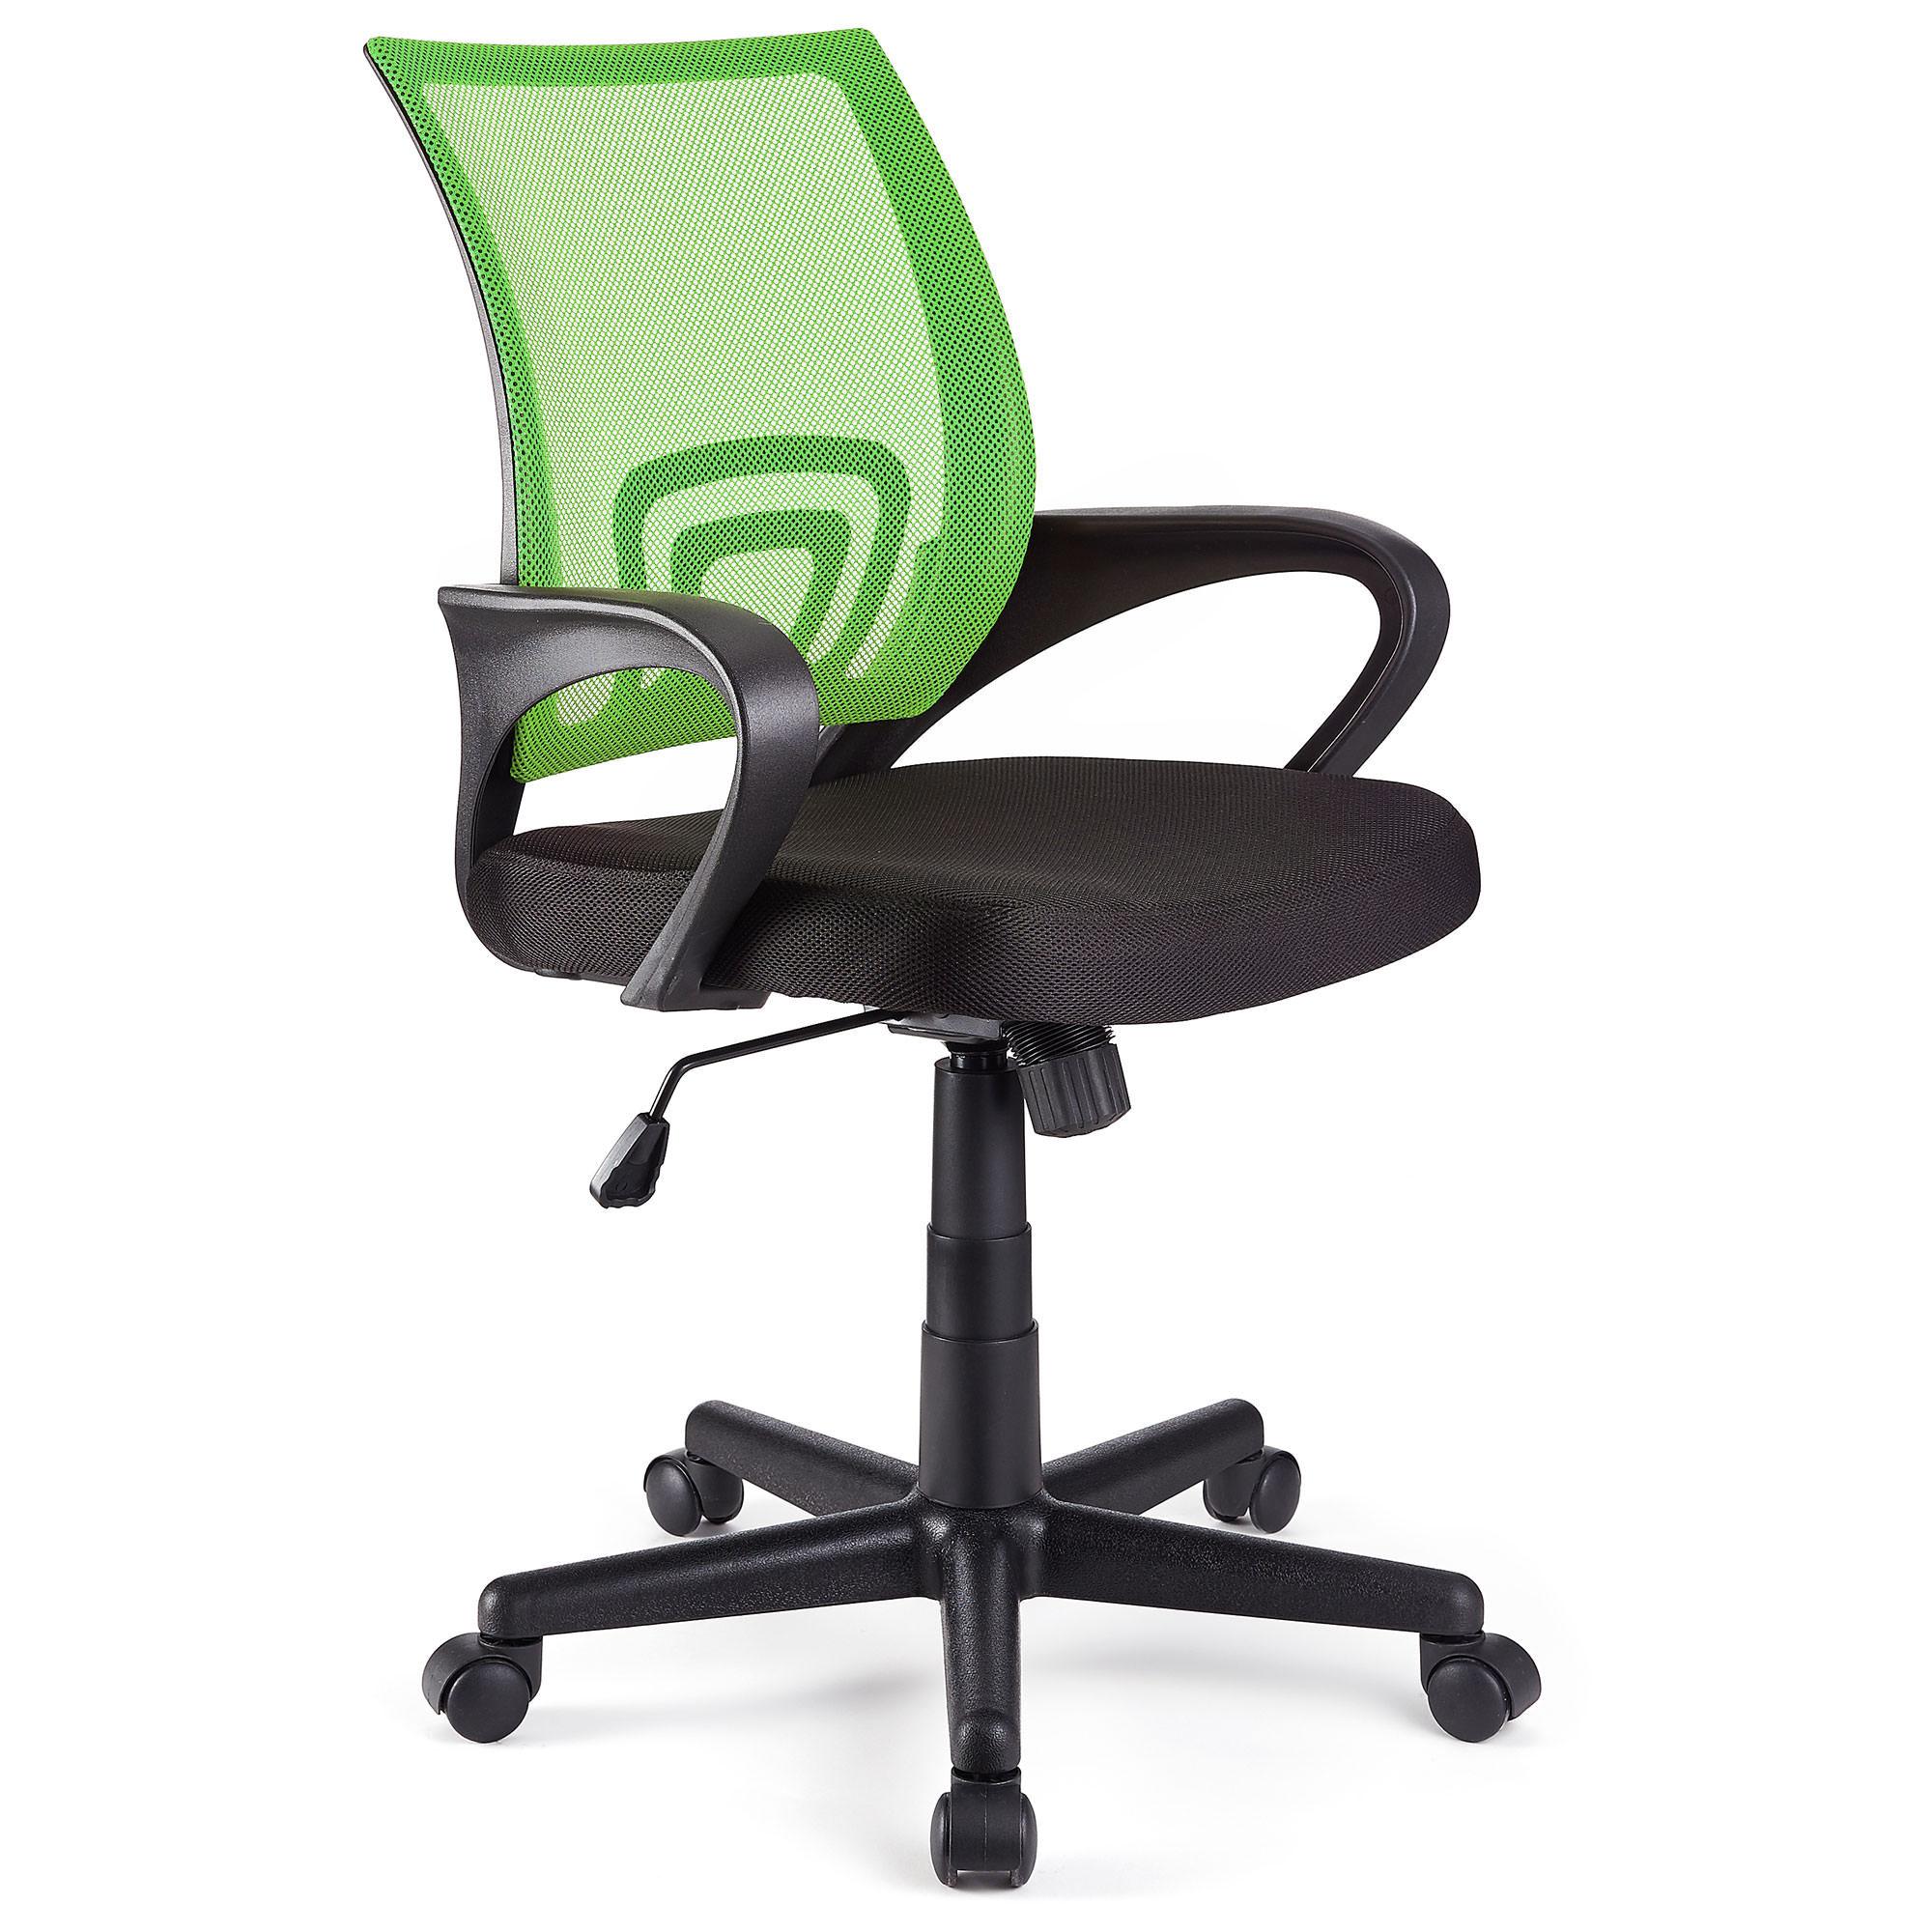 Schreibtischstuhl SEOUL, schönes Design, große gepolsterte Sitzfläche, Farbe Grün